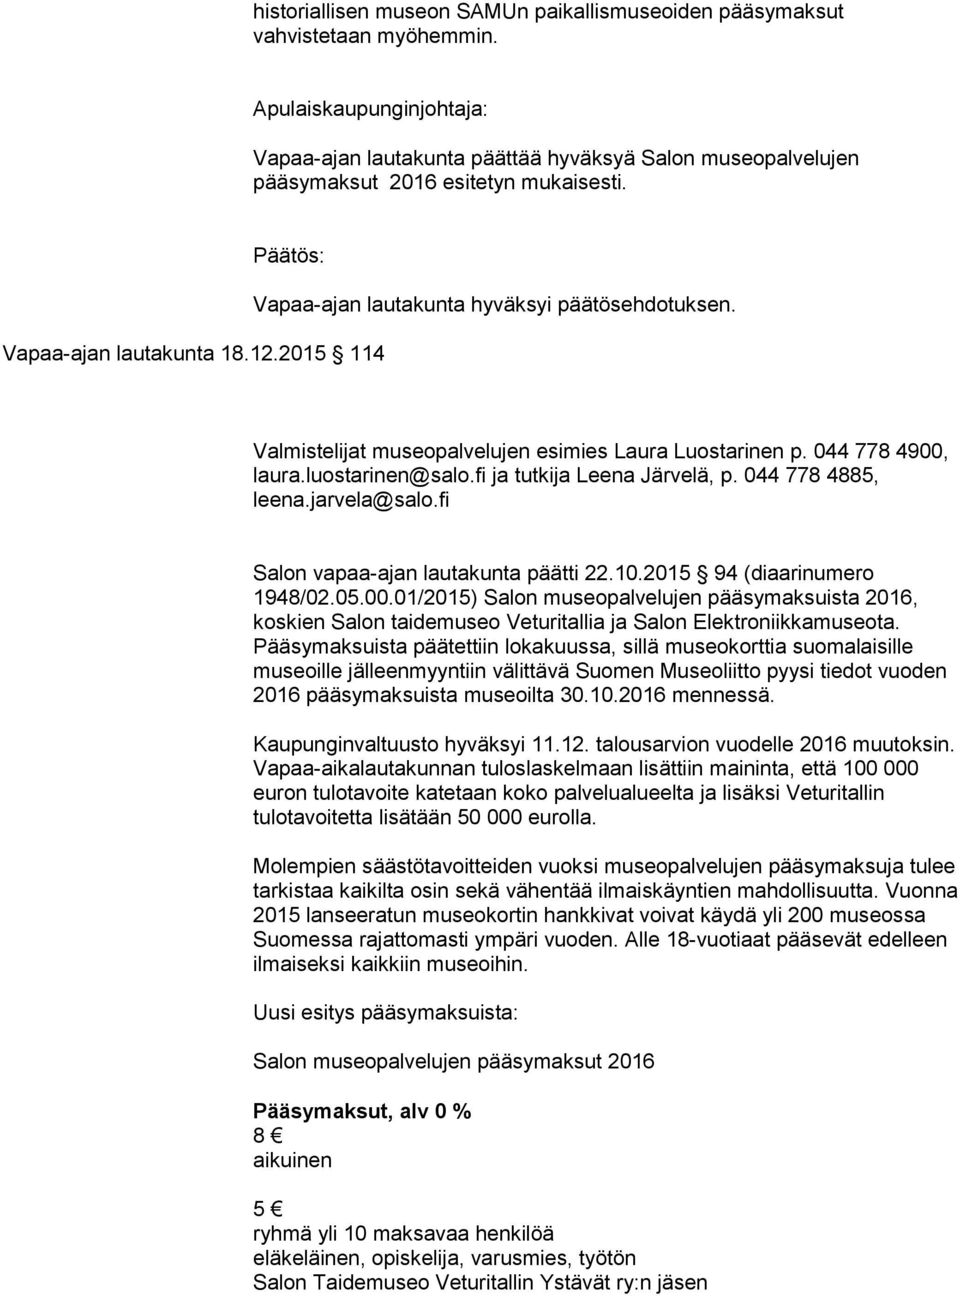 fi ja tutkija Leena Järvelä, p. 044 778 4885, leena.jarvela@salo.fi Salon vapaa-ajan lautakunta päätti 22.10.2015 94 (diaarinumero 1948/02.05.00.